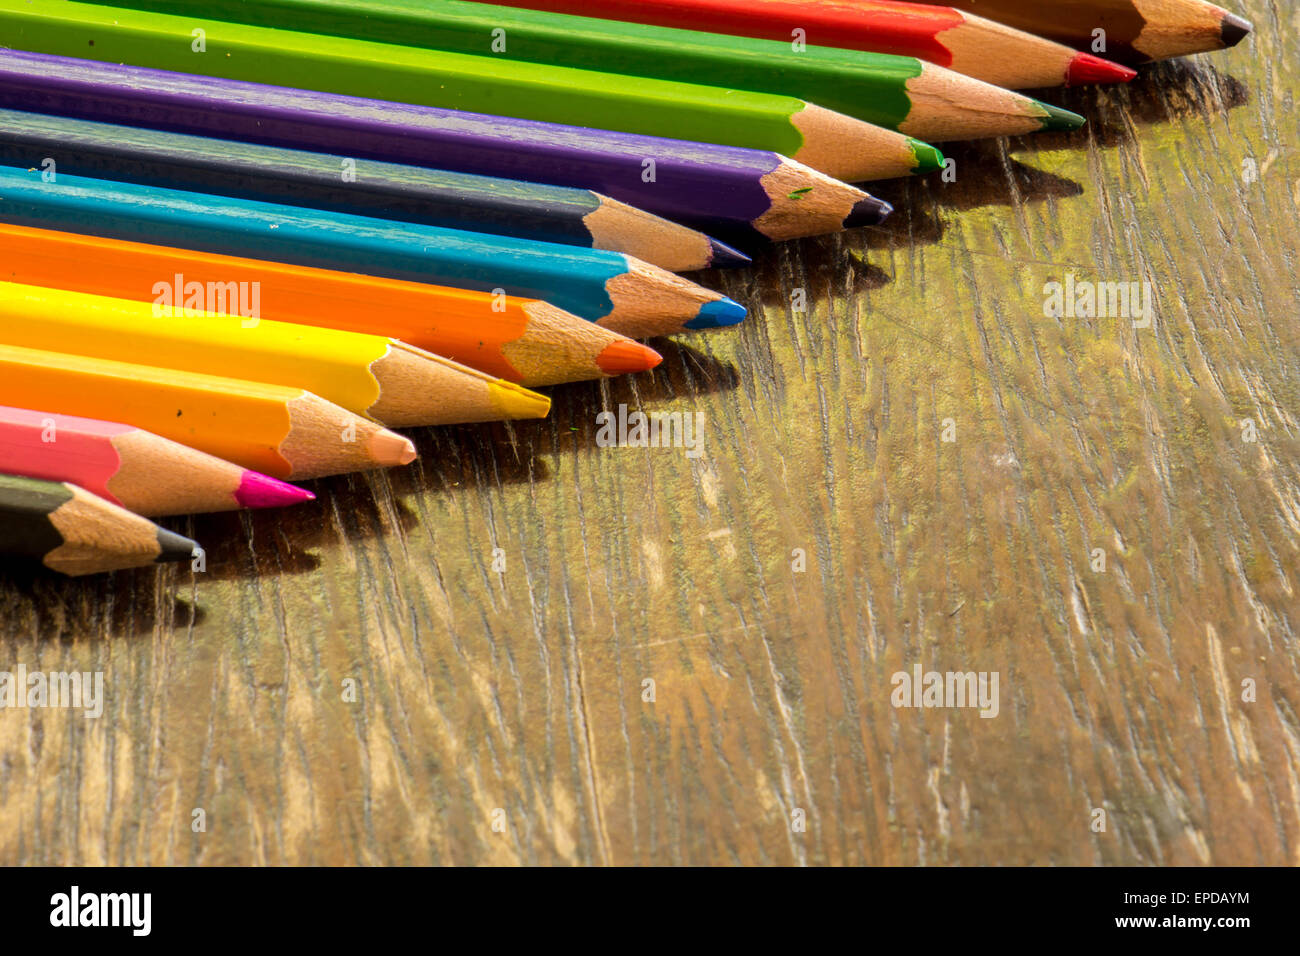 Trier les revêtements de crayons, couleurs vives, rouge, jaune, noir, orange et vert. Banque D'Images